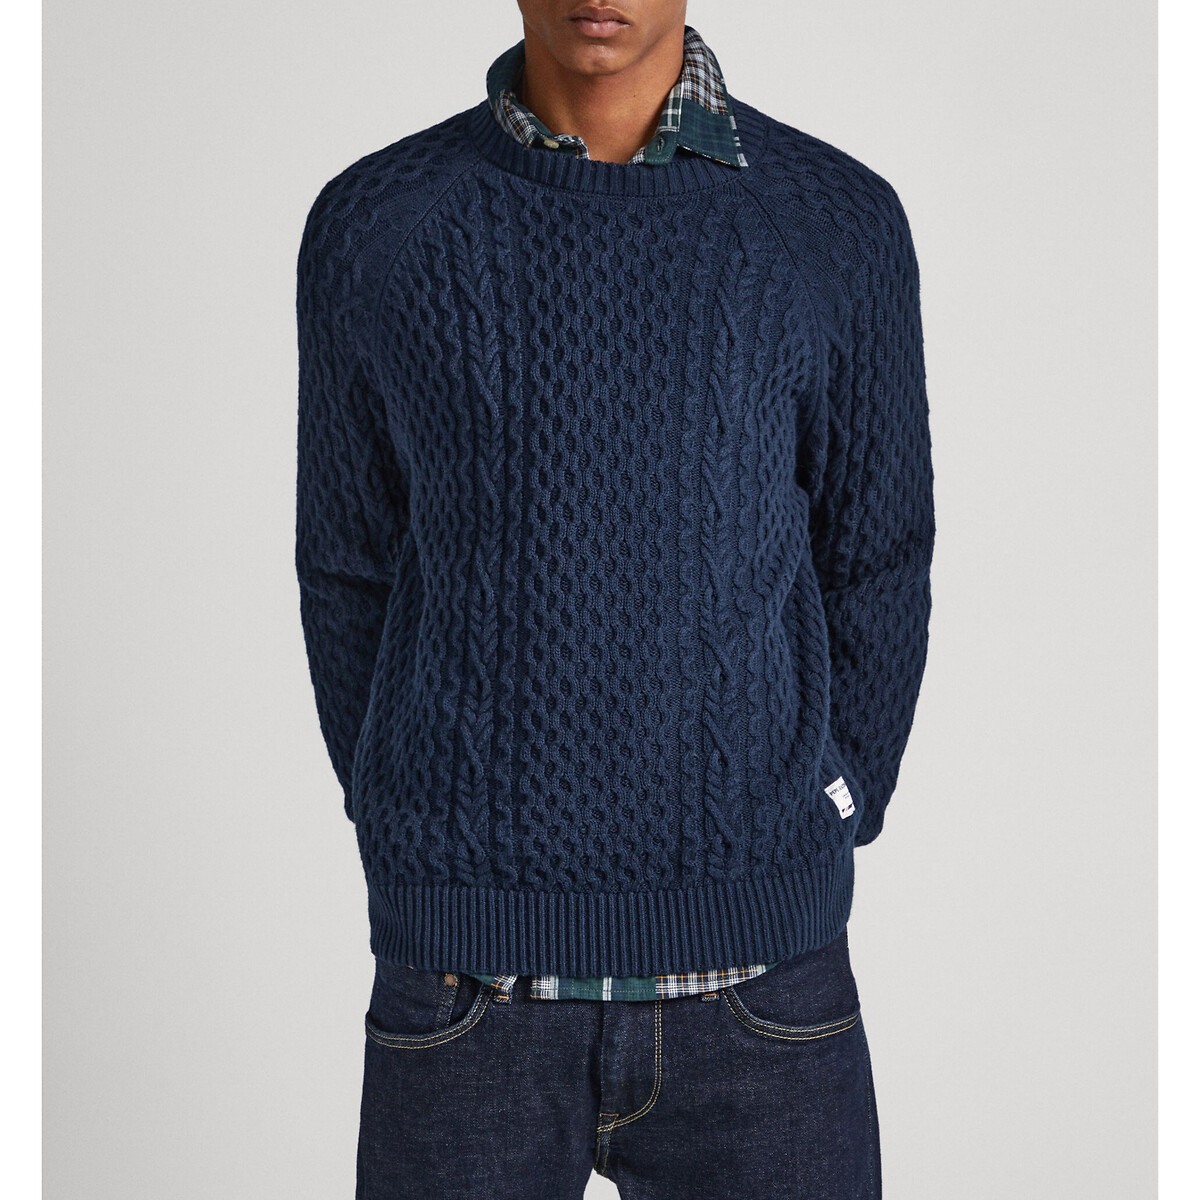 Пуловер с круглым вырезом из текстурированного трикотажа M синий